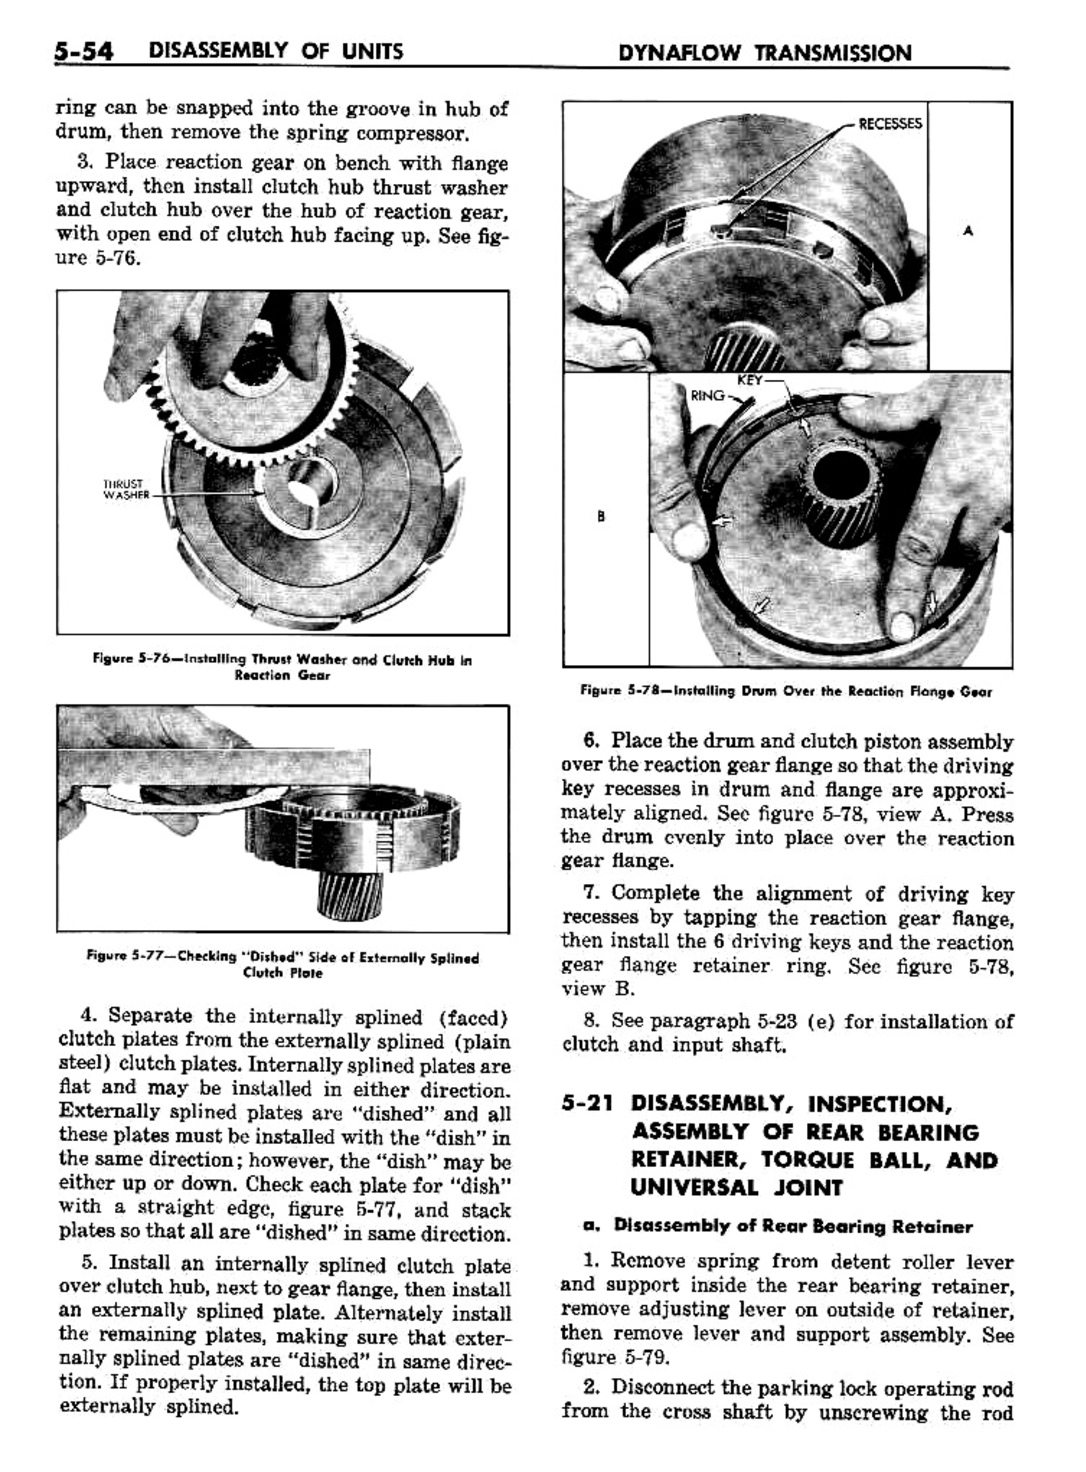 n_06 1957 Buick Shop Manual - Dynaflow-054-054.jpg